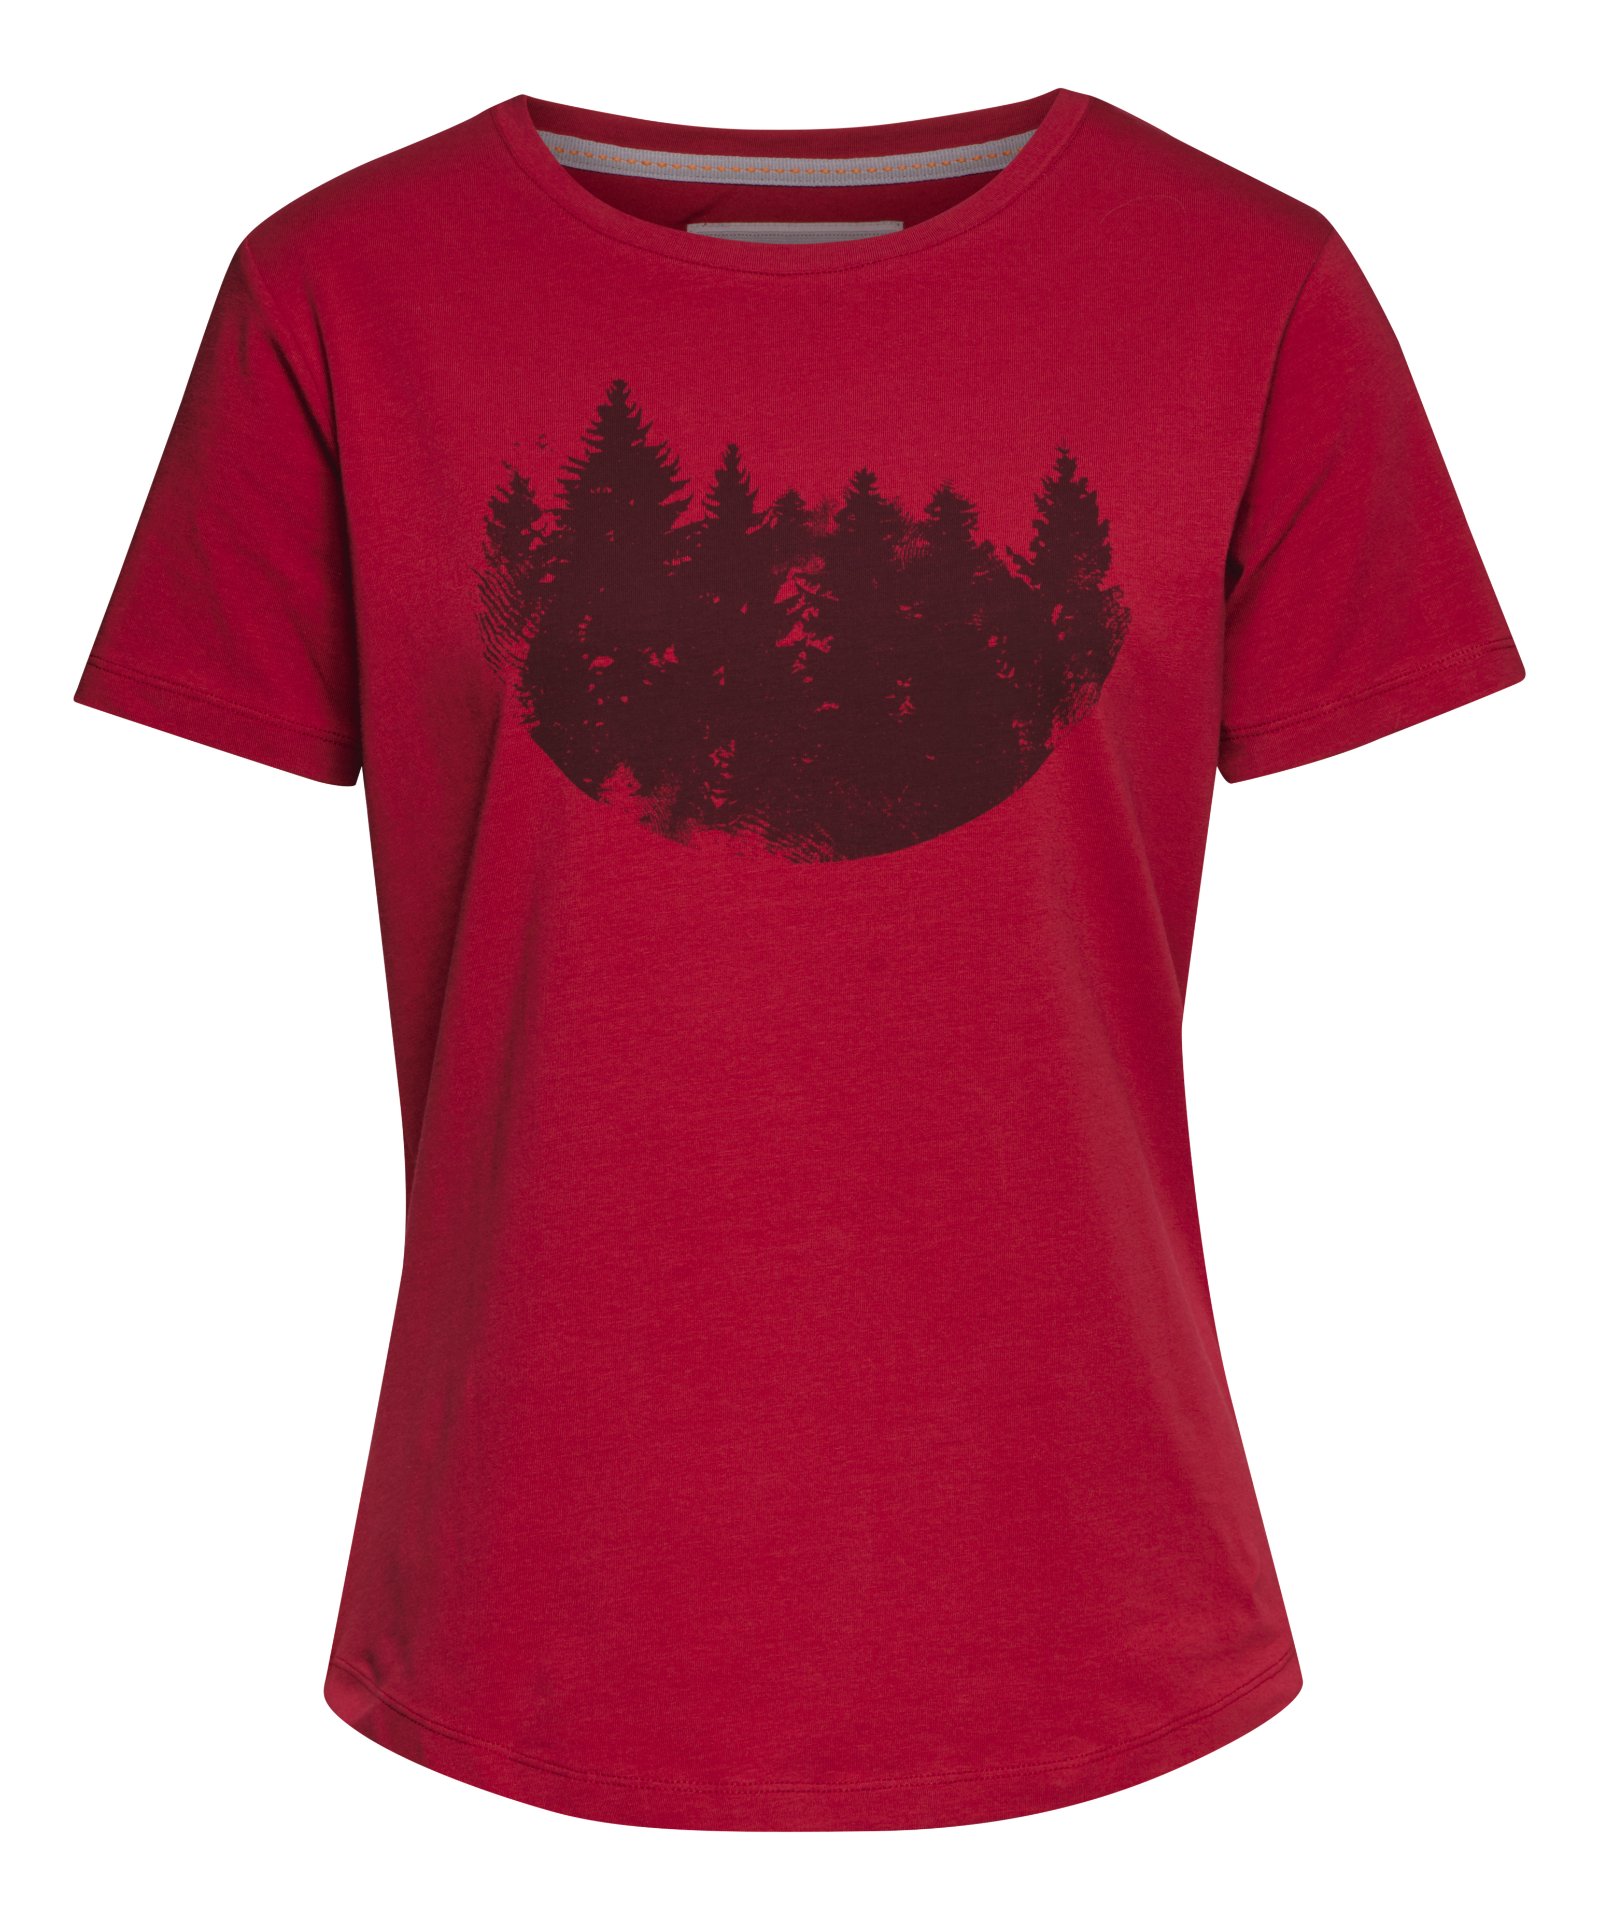 STIHL T-Shirt FIR FOREST Damen rot